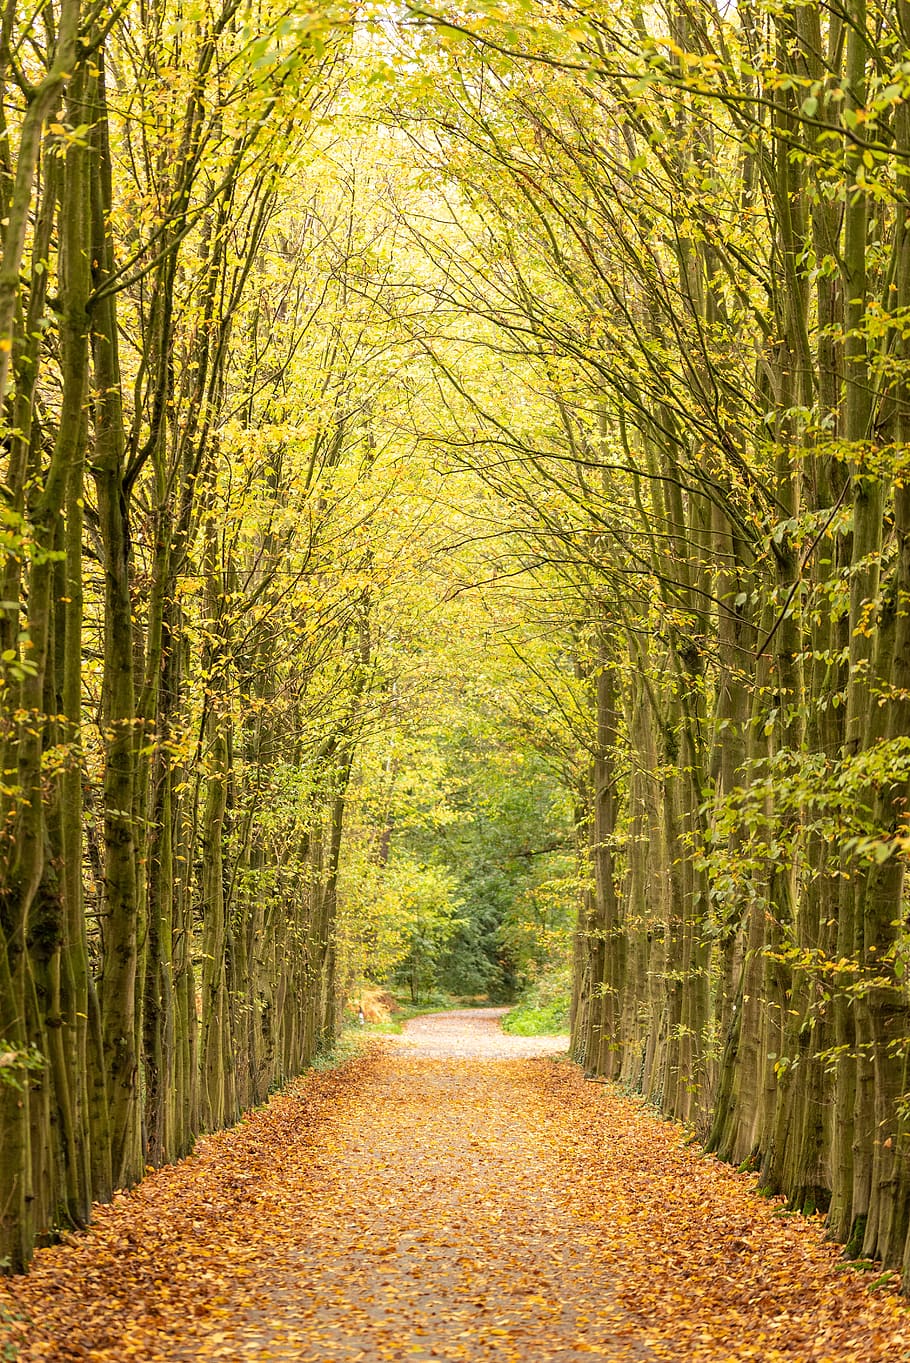 Avenida, otoño, árboles, camino, naturaleza, bosque, el camino a seguir, dirección, árbol, planta